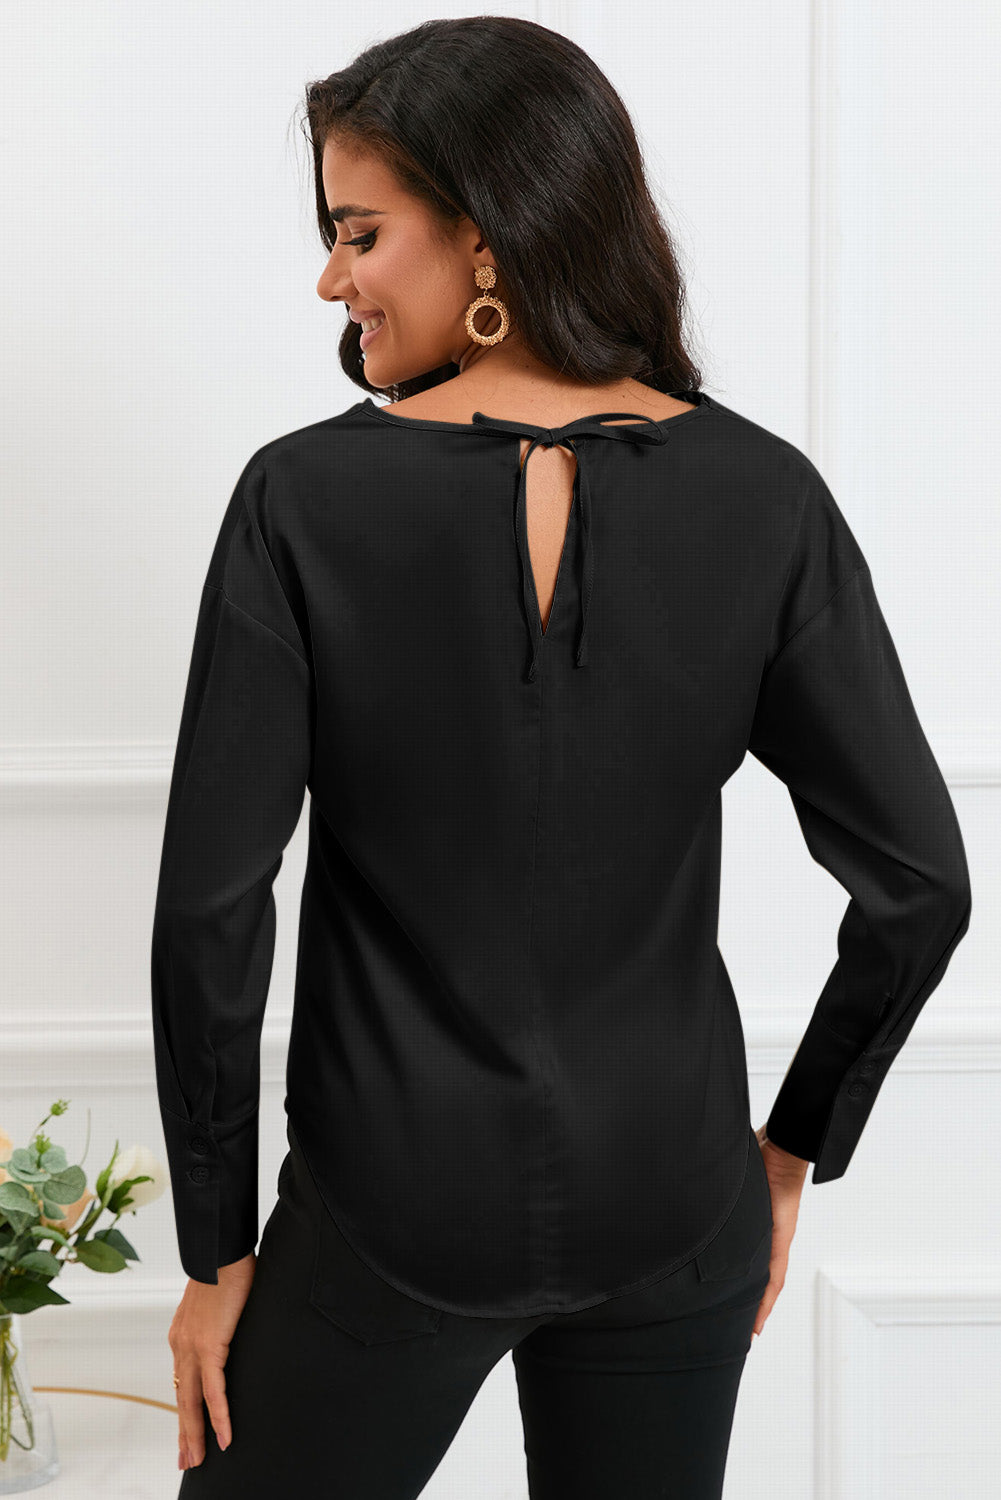 Crna elegantna bluza s dugim rukavima i dugim rukavima